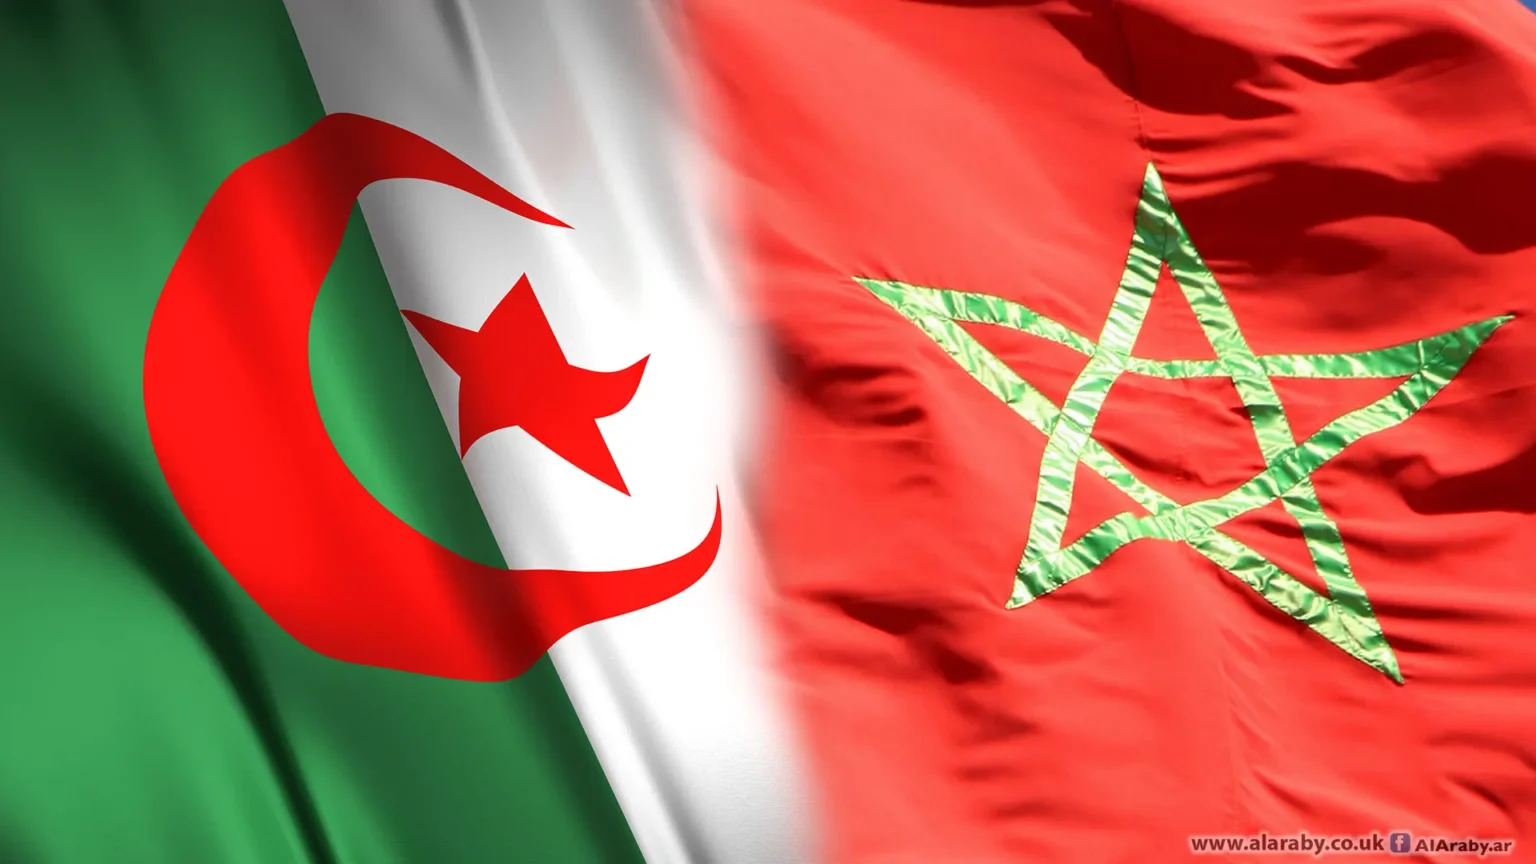 استقبال المغاربة بالورود من قلب الجزائر